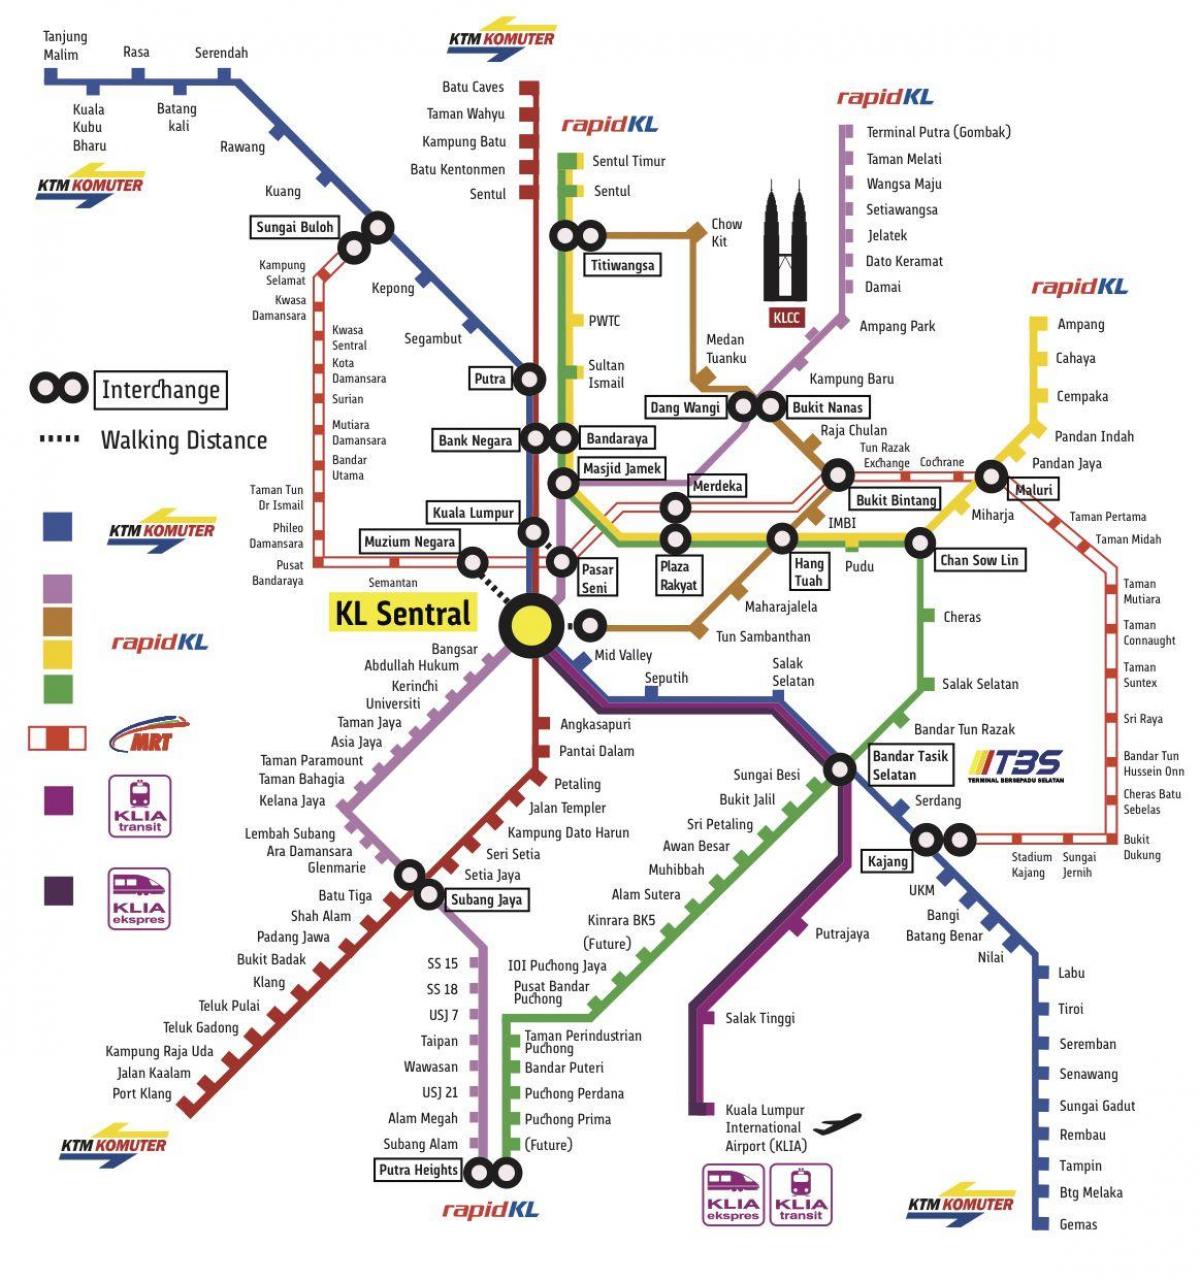 превоз Куала Лумпура мапи